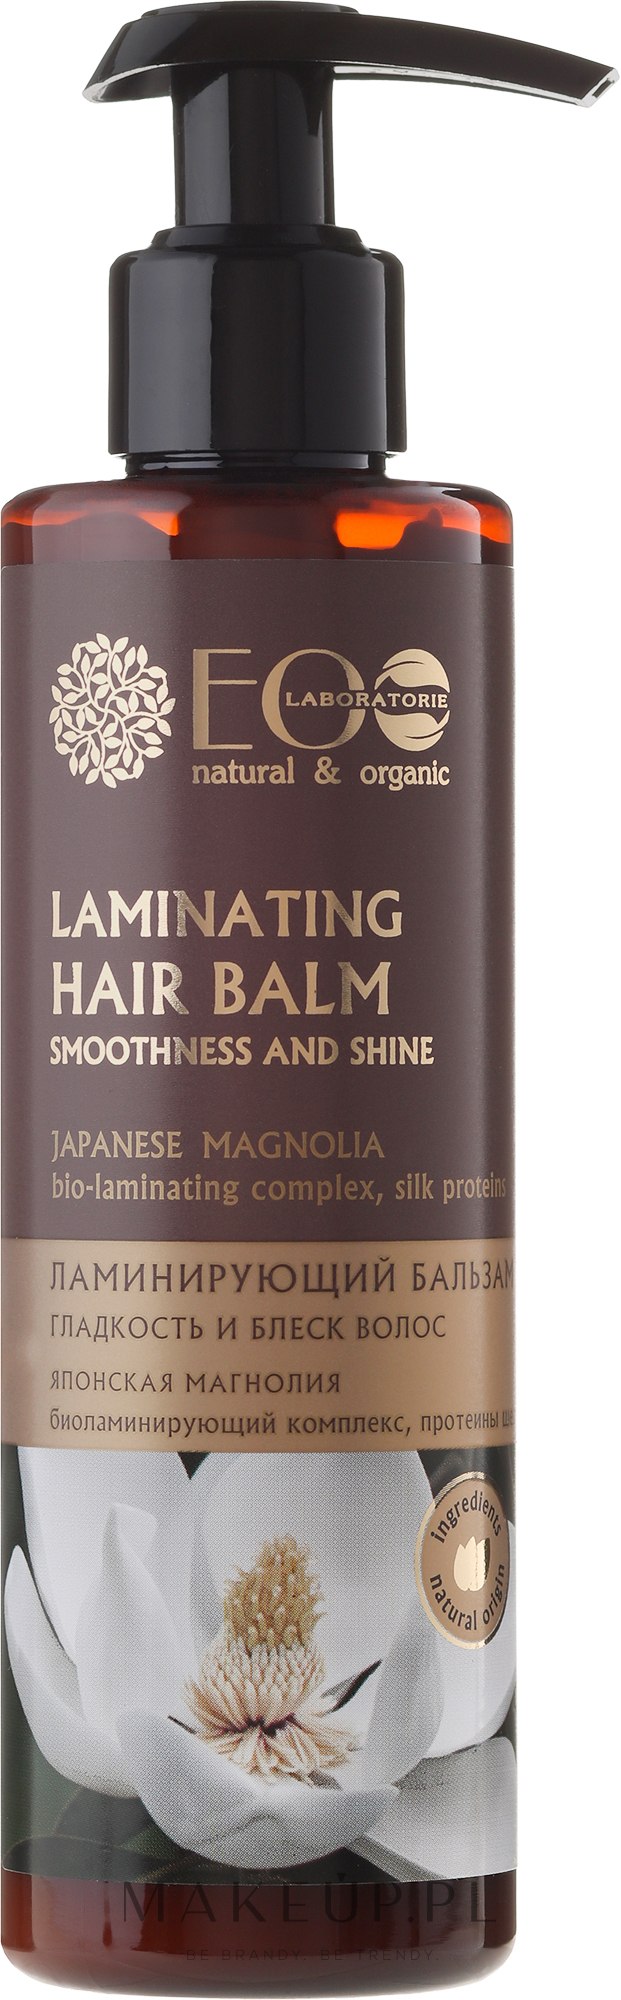 laminujący szampon do włosów japońska magnolia